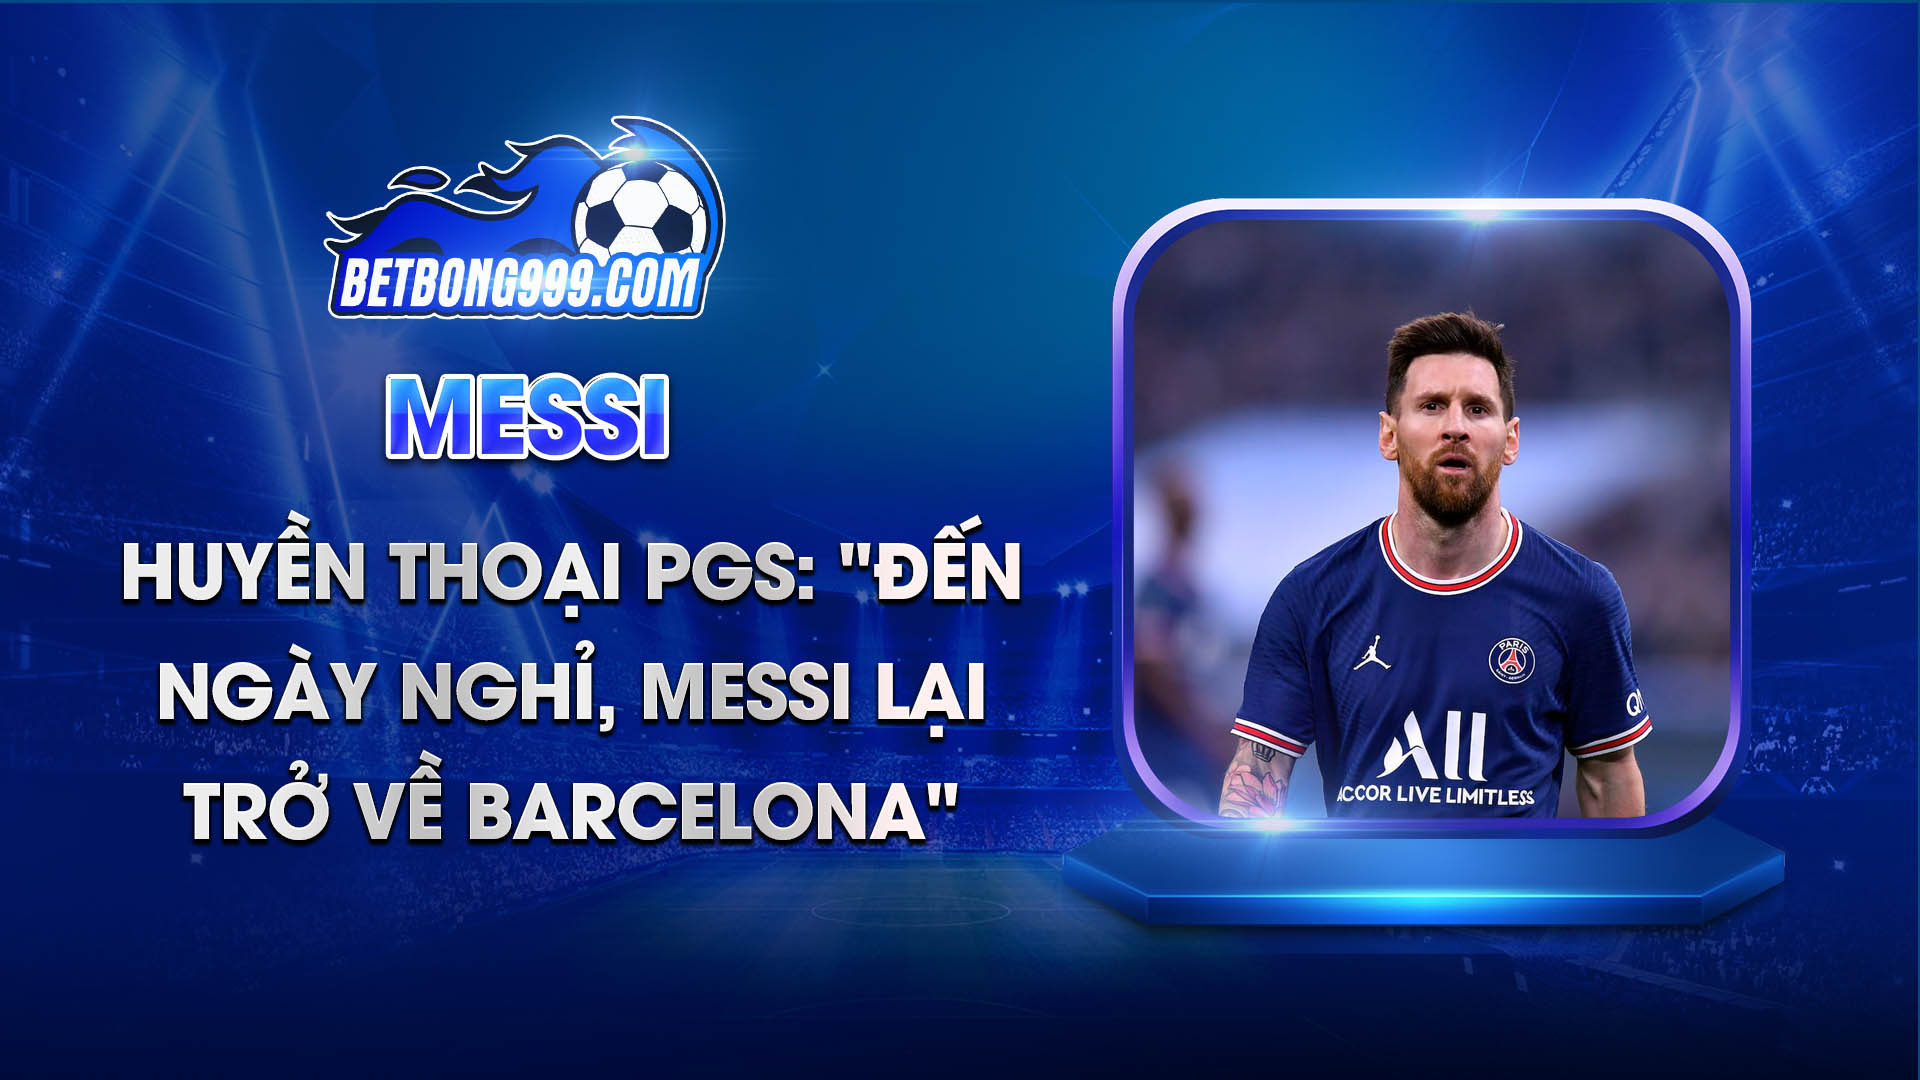 Huyền thoại PGS Đến ngày nghỉ, Messi lại trở về Barcelona